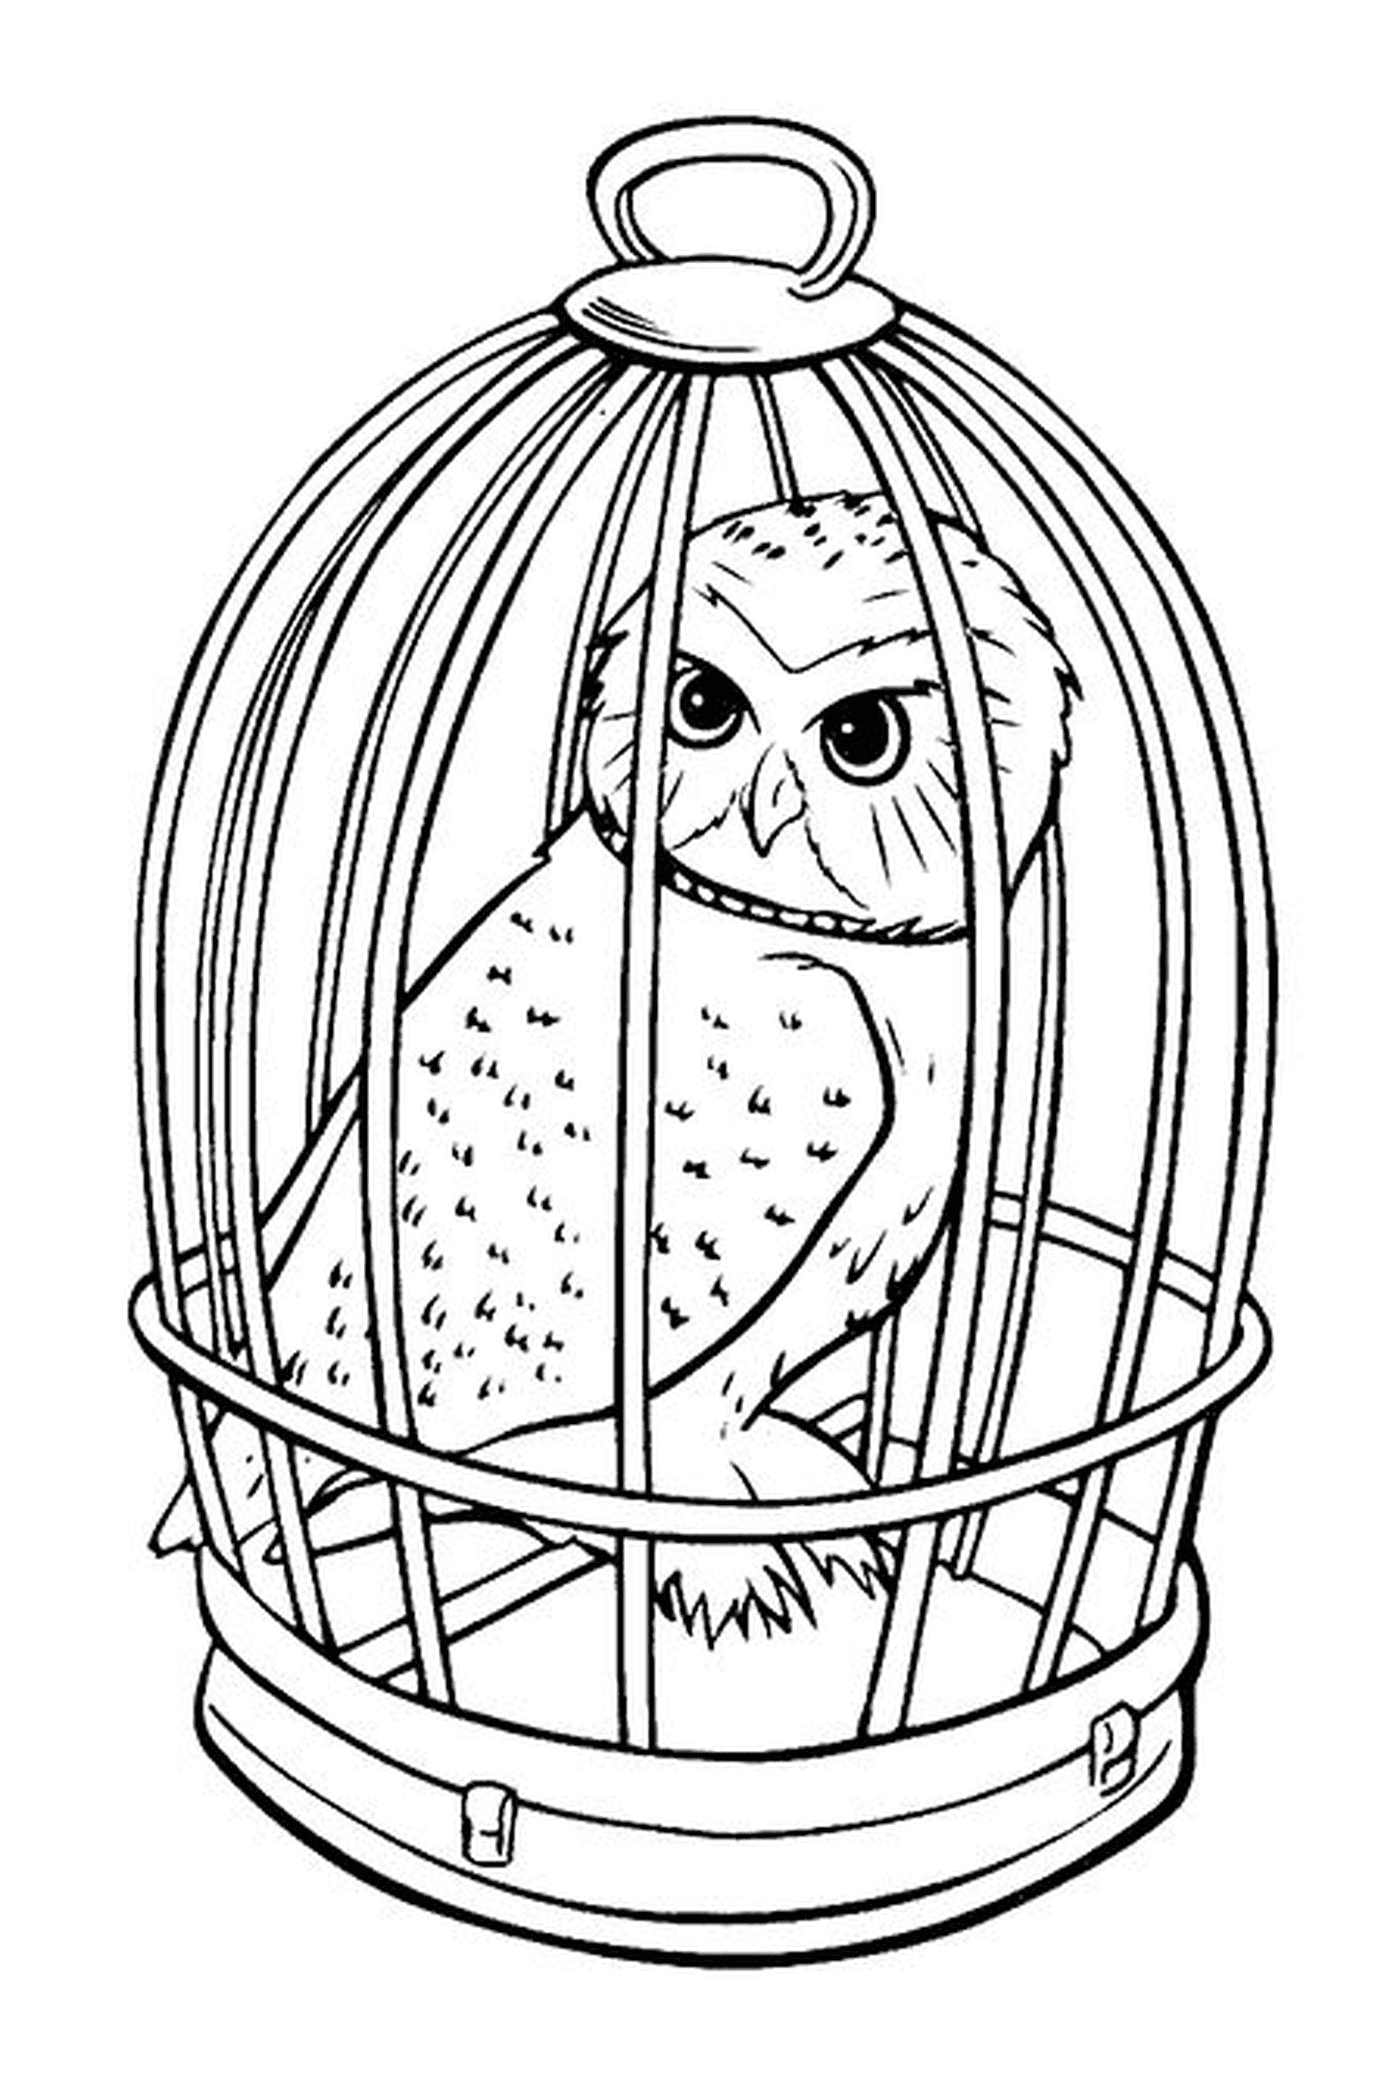  猫头鹰 Hedwige在一个笼子里 